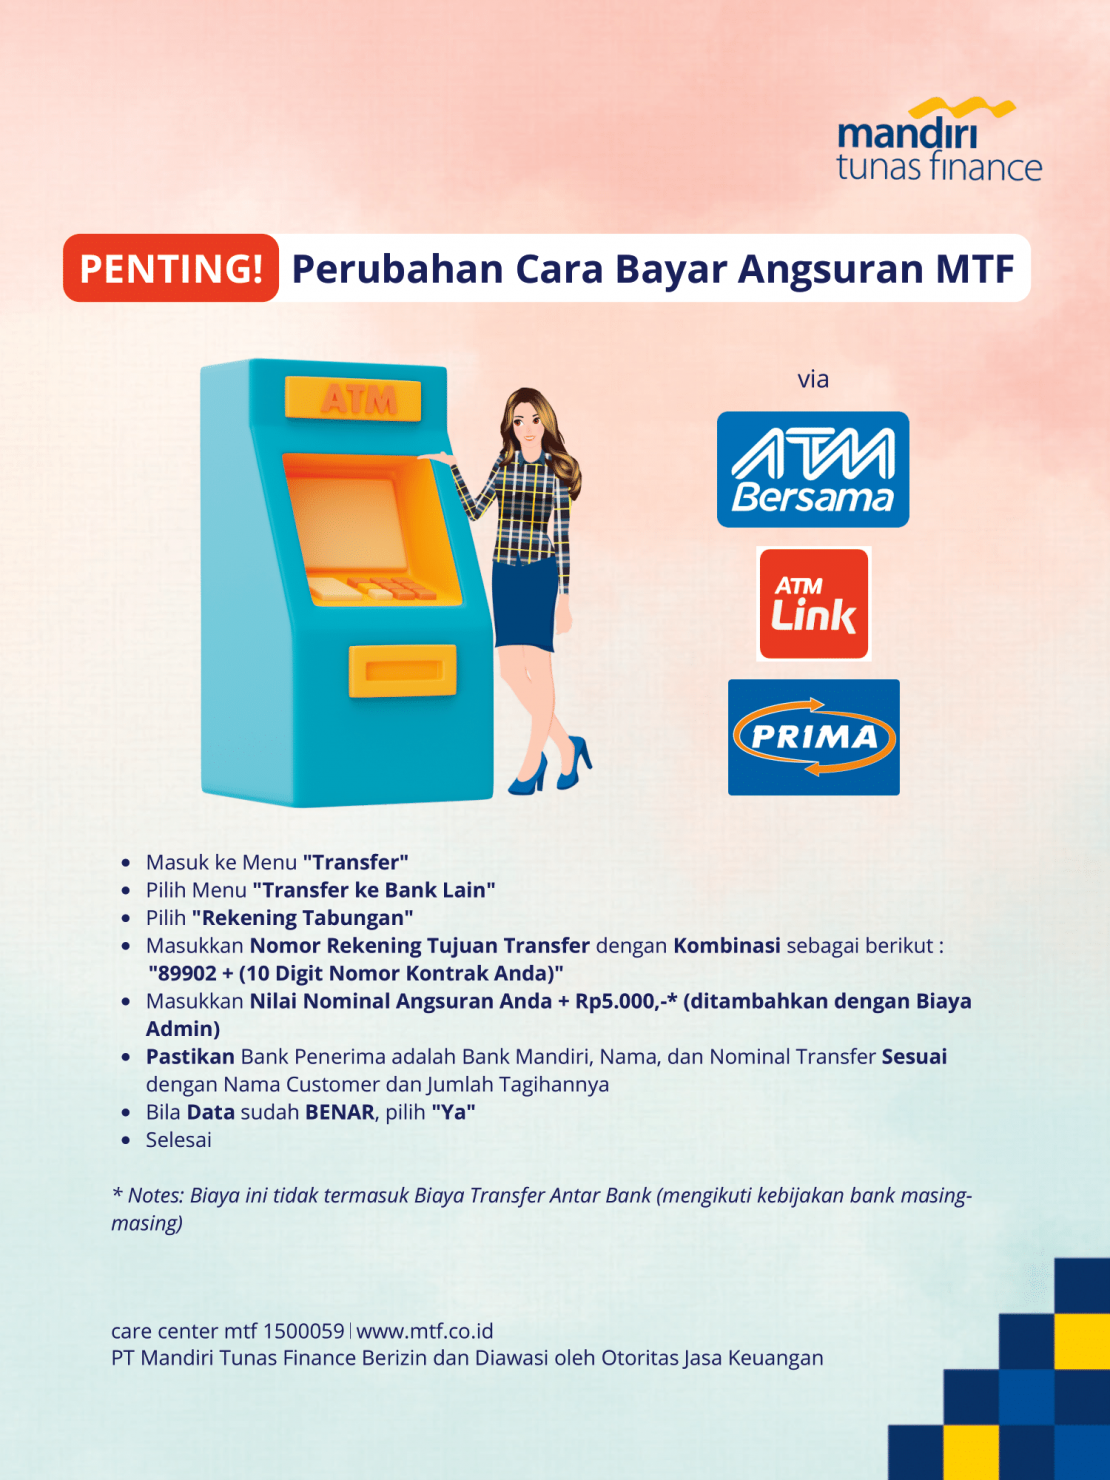 Tata Cara Pembayaran Angsuran MTF Melalui ATM Bersama